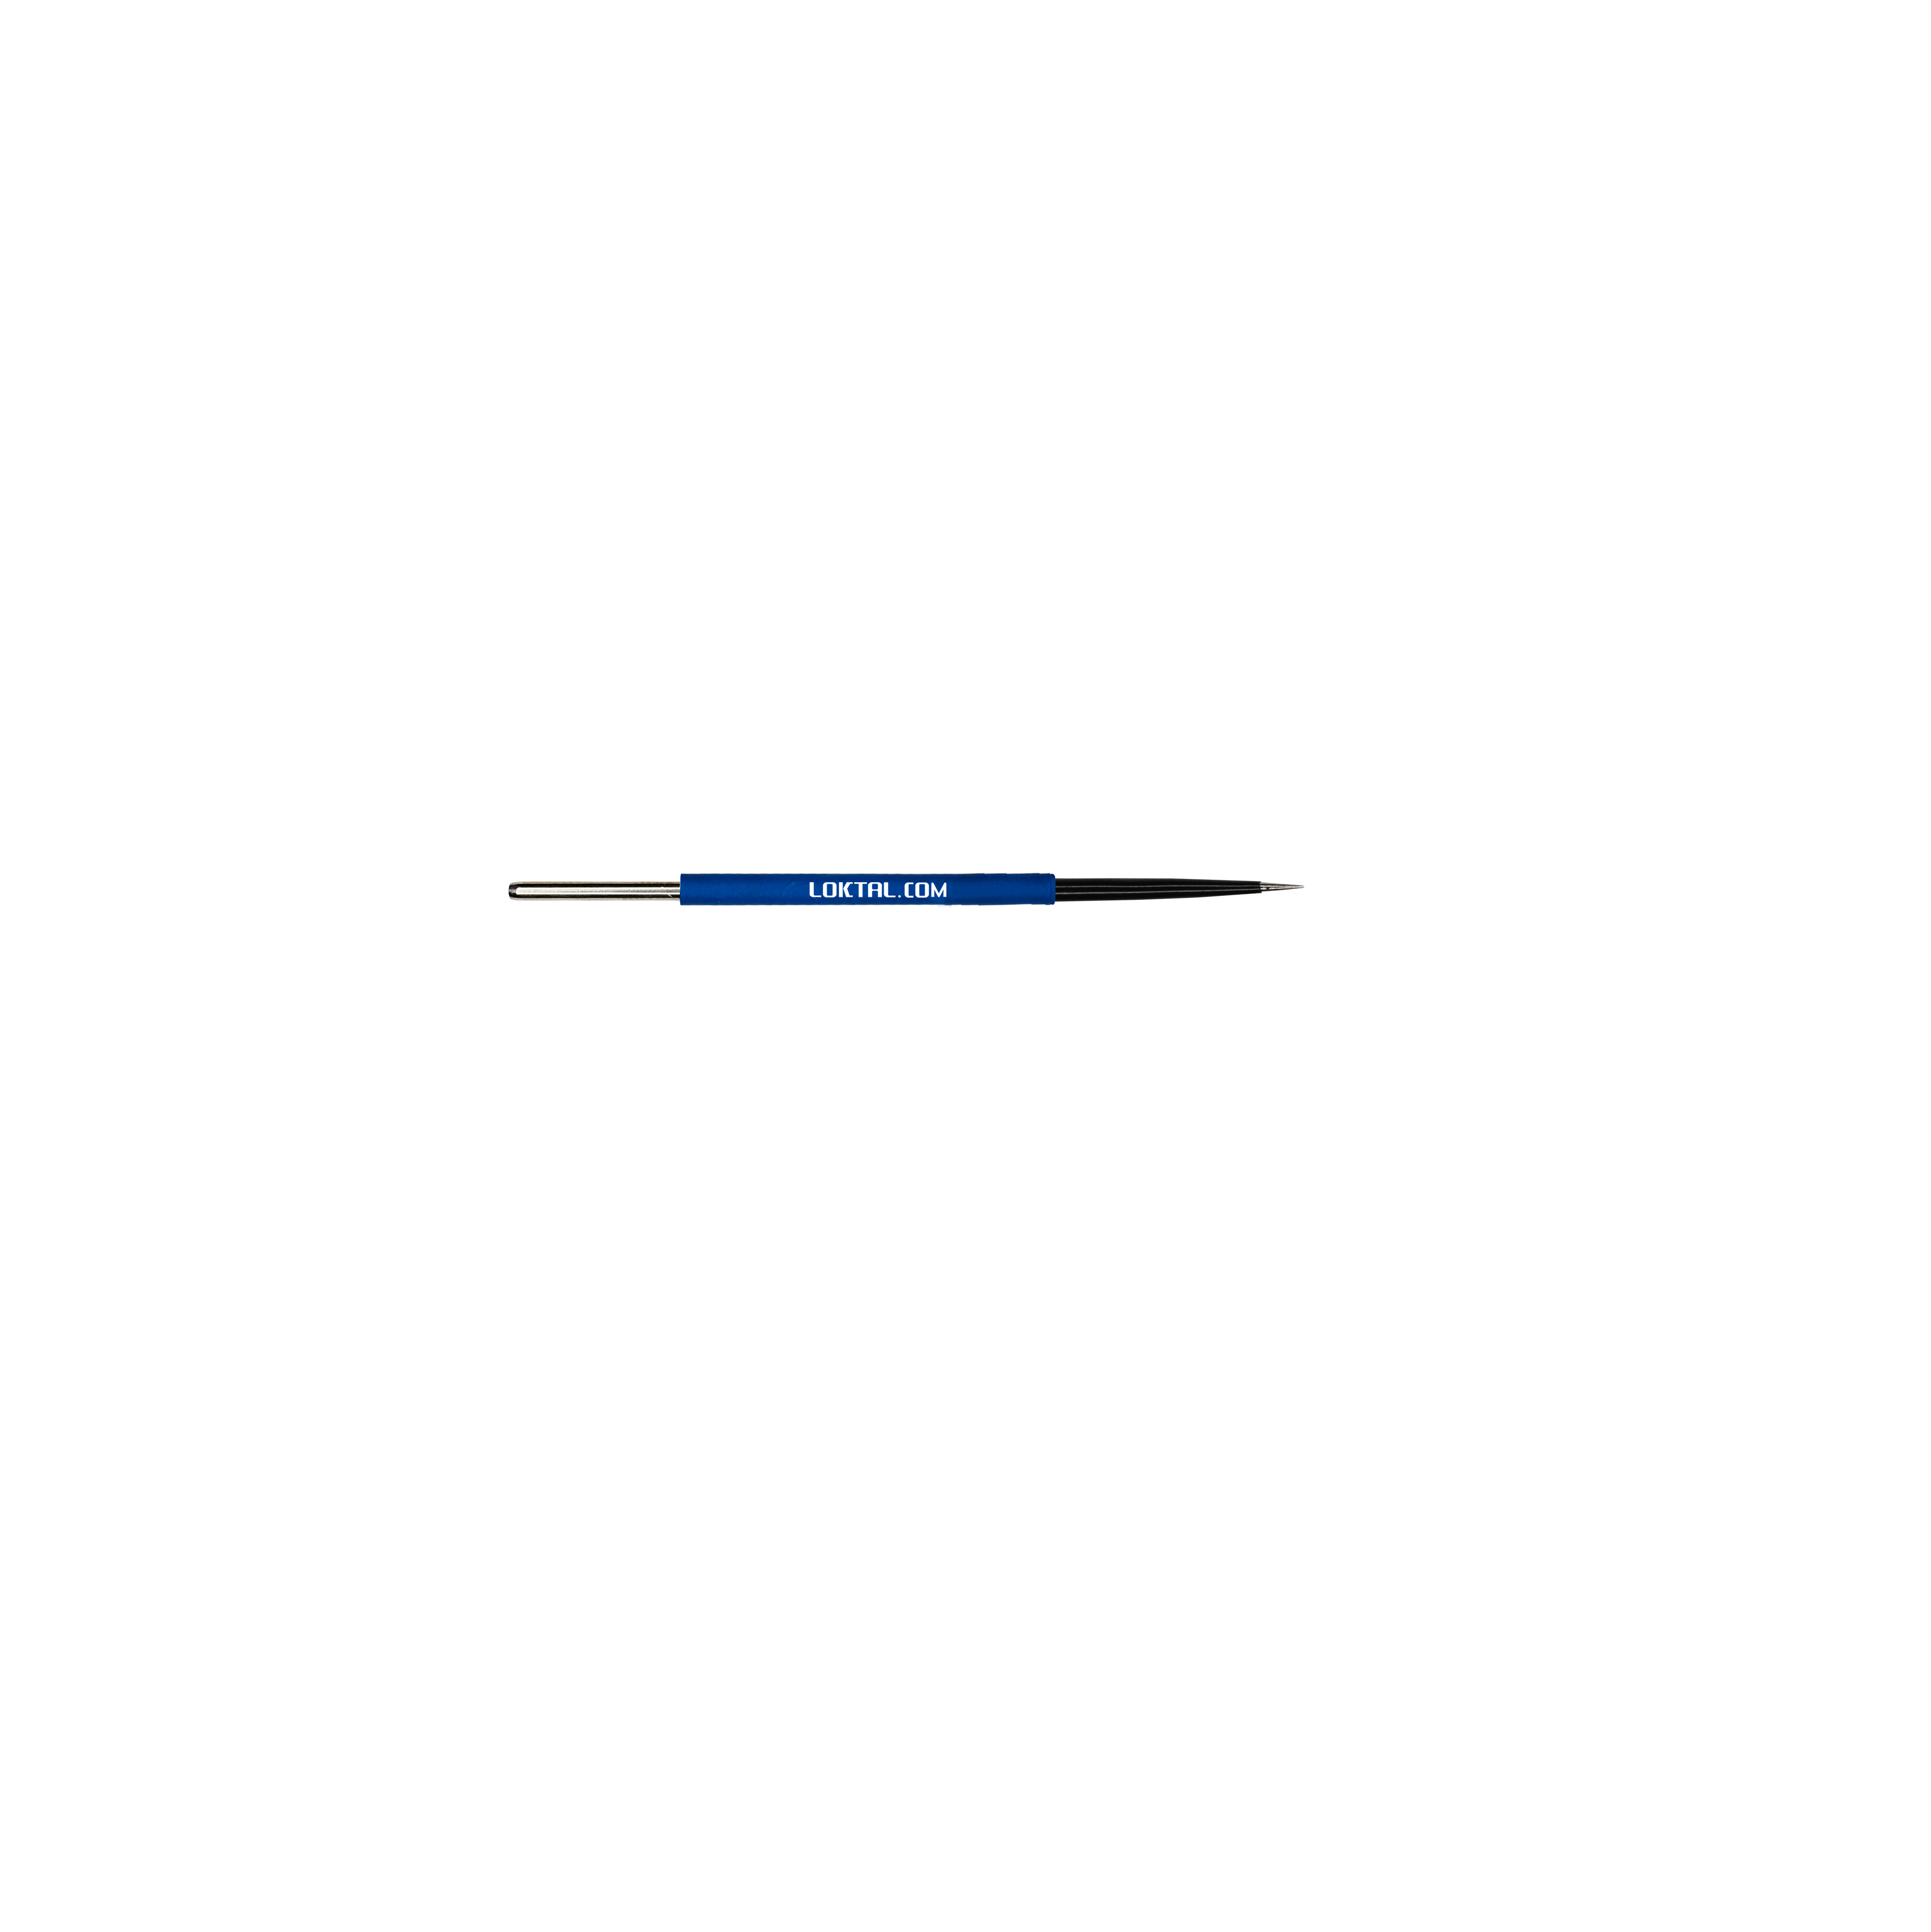 ACEL0108  - Eletrodo eletrocirúrgico, micro incisão de precisão, reto, 75 mm, haste Ø 1,8 mm